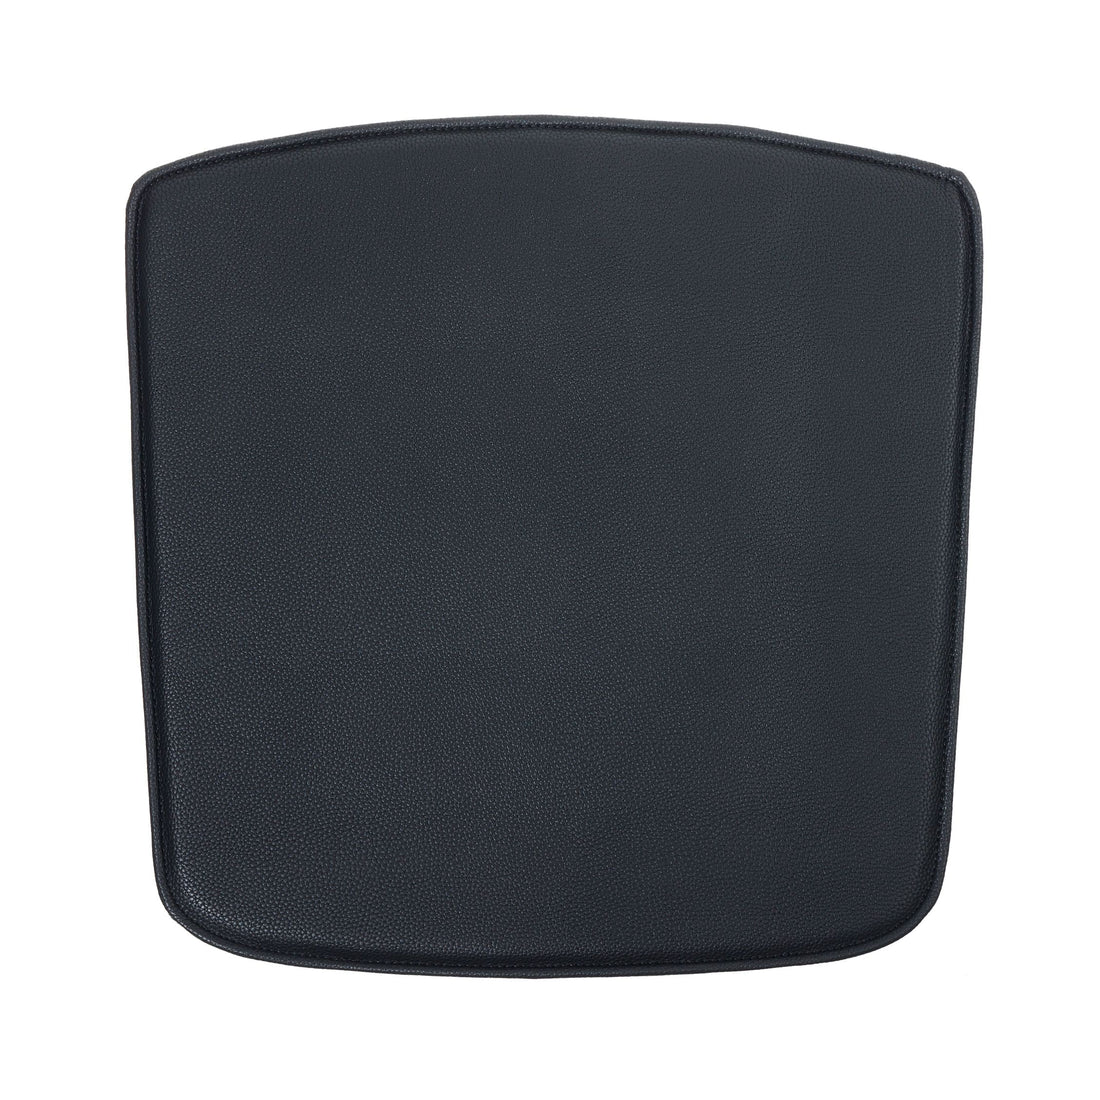 Basic black cushion for the FDB J155 Tom Stepp Yak chair